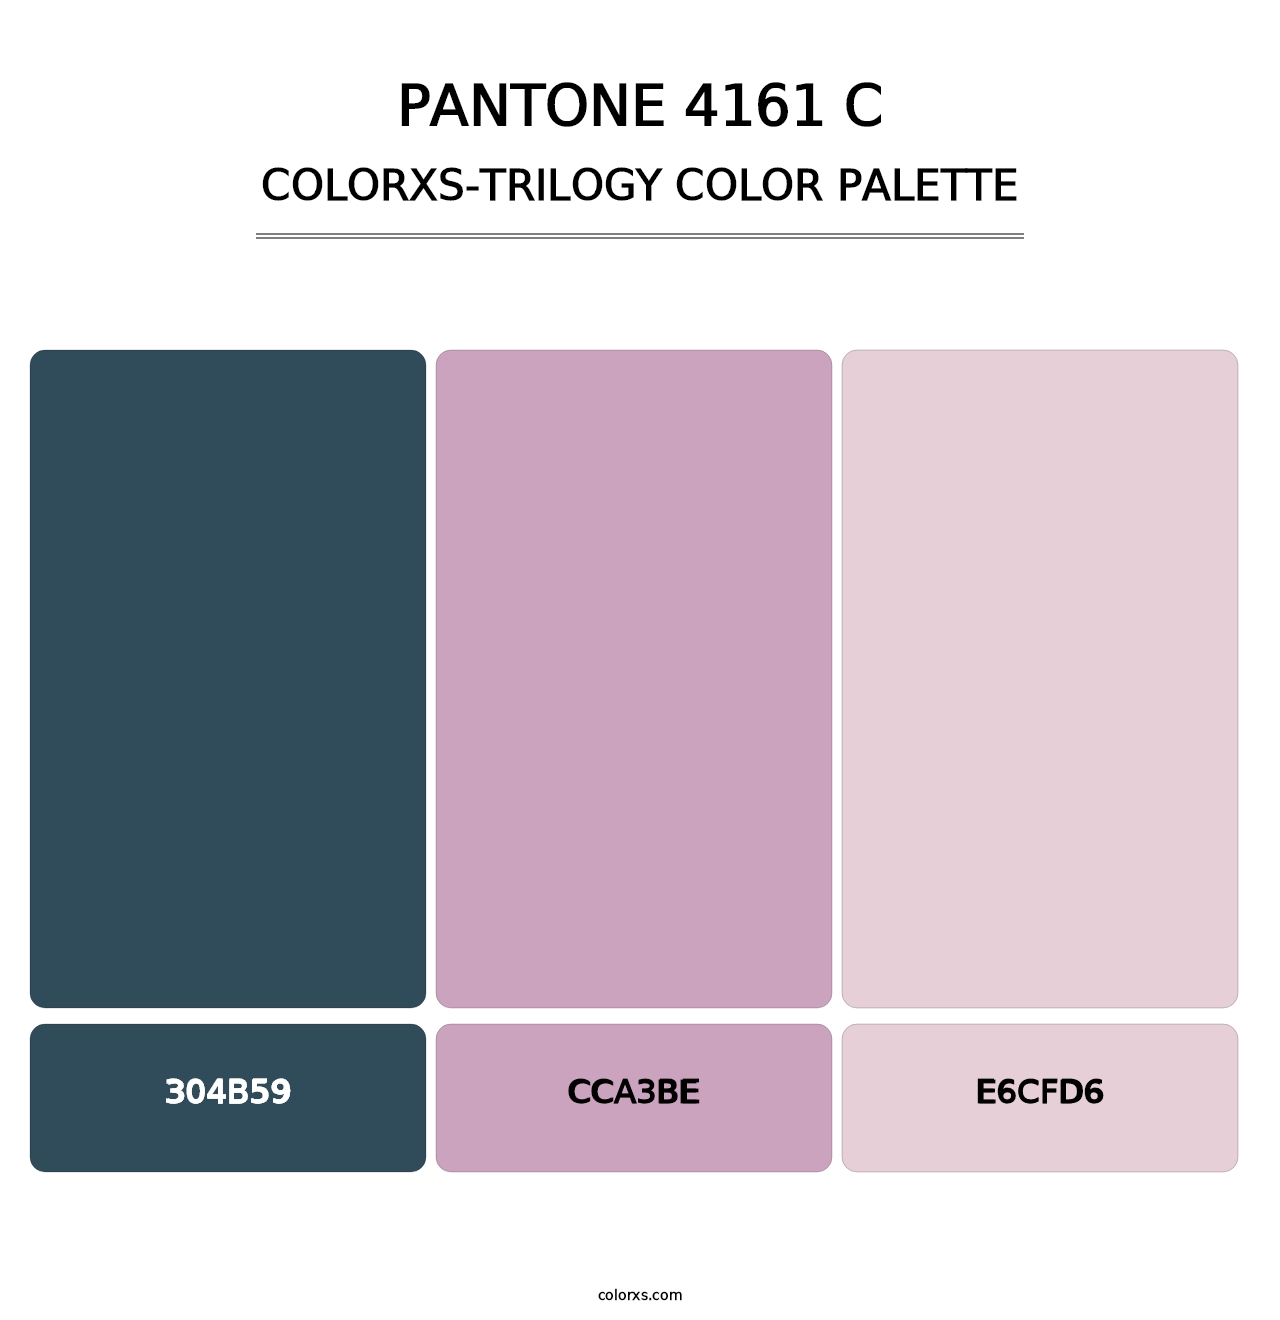 PANTONE 4161 C - Colorxs Trilogy Palette